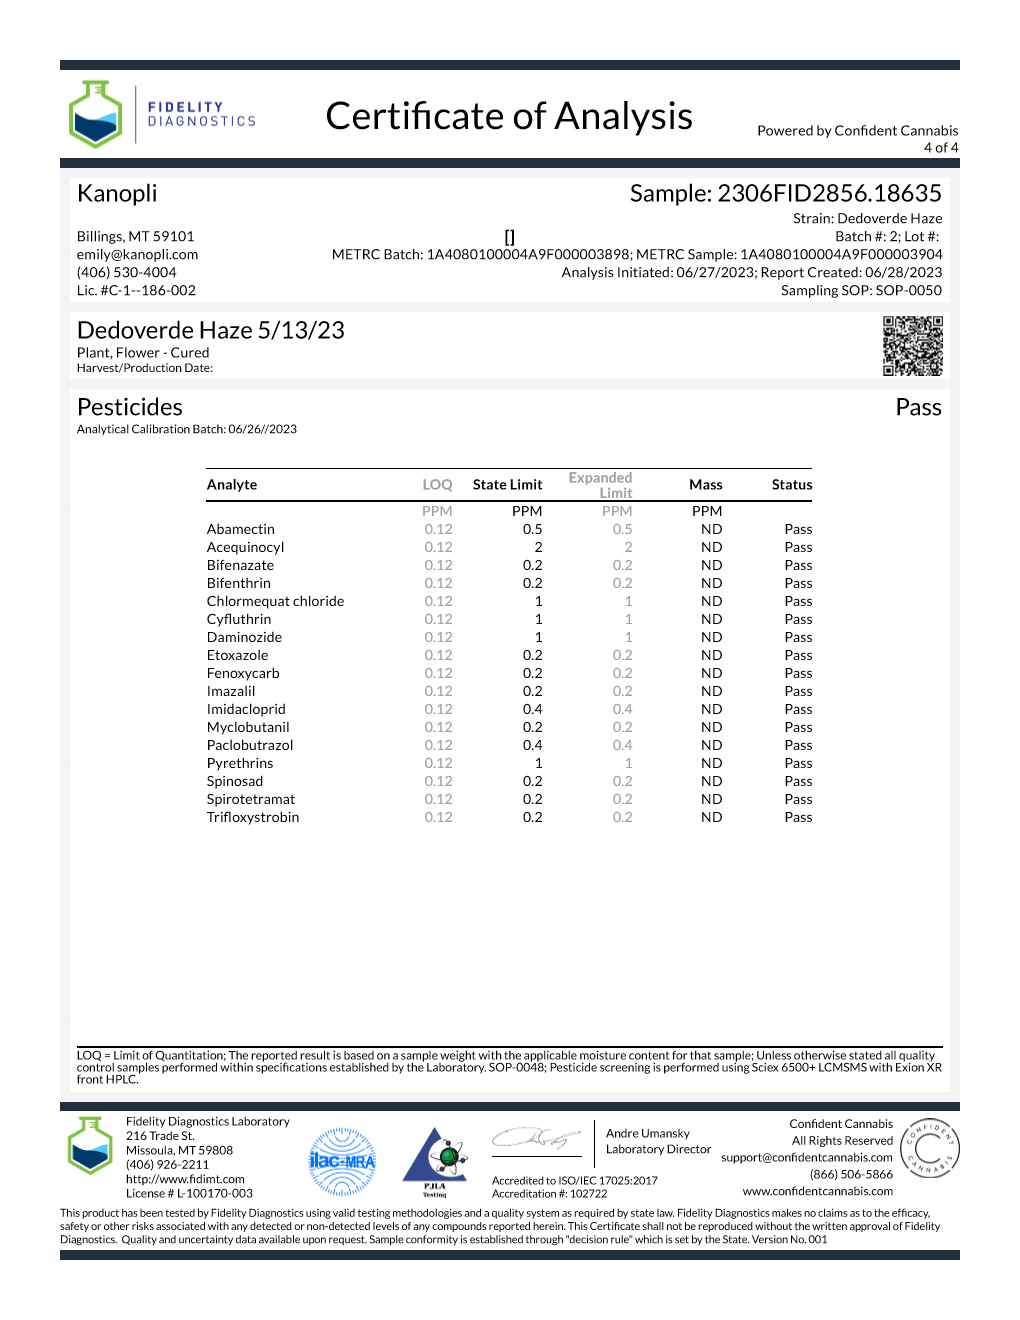 Dedoverde Haze - Hybrid shake (31.73% THC) May 2023 (5 grams)